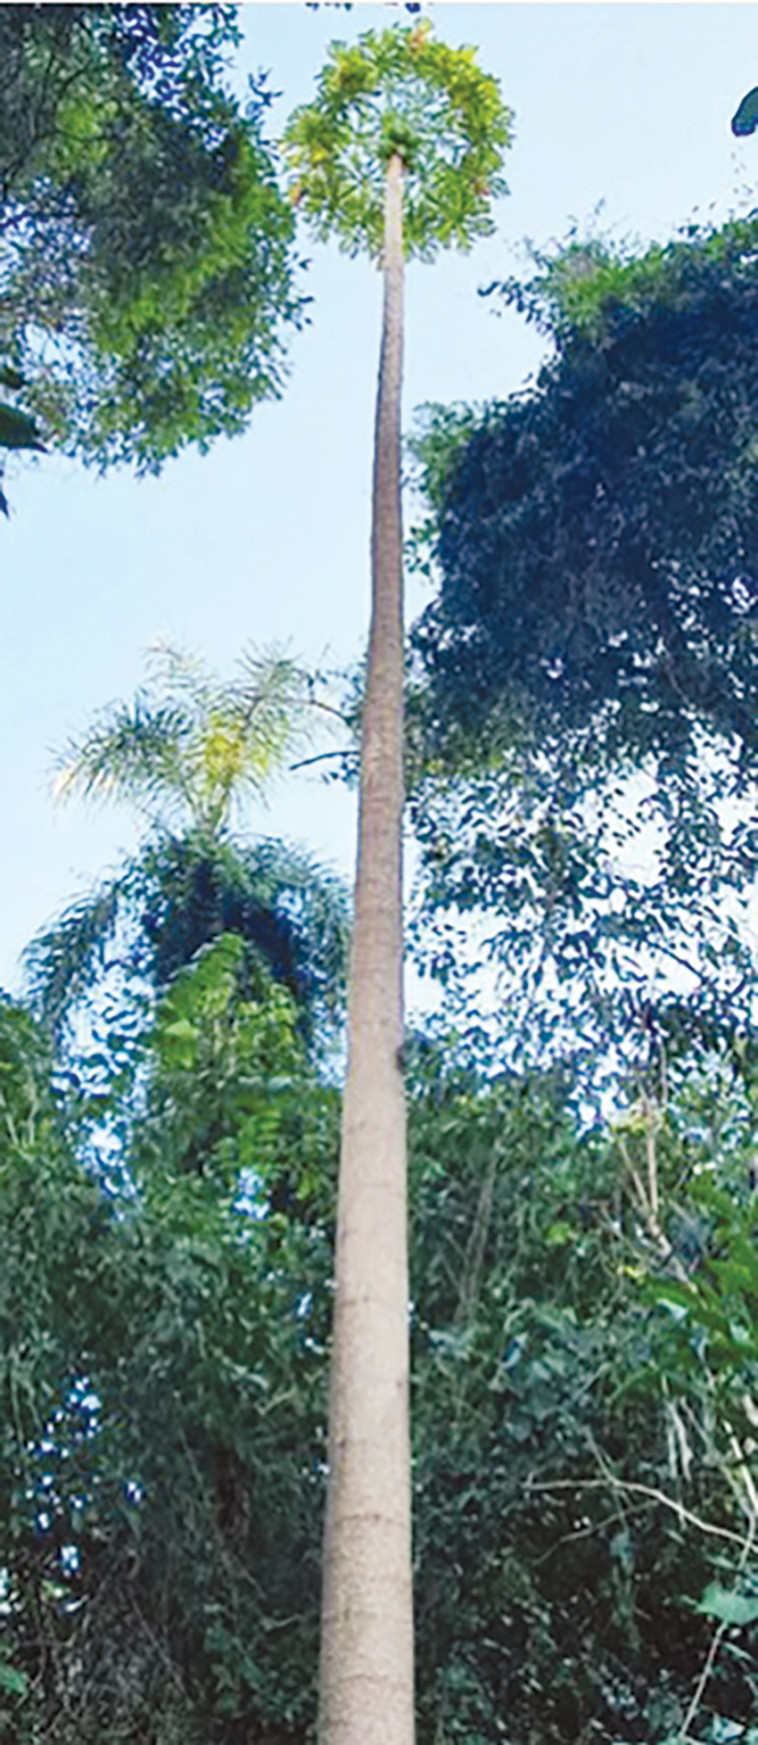 עץ הפפאיה הגבוהה בעולם (צילום: שיאי גינס)